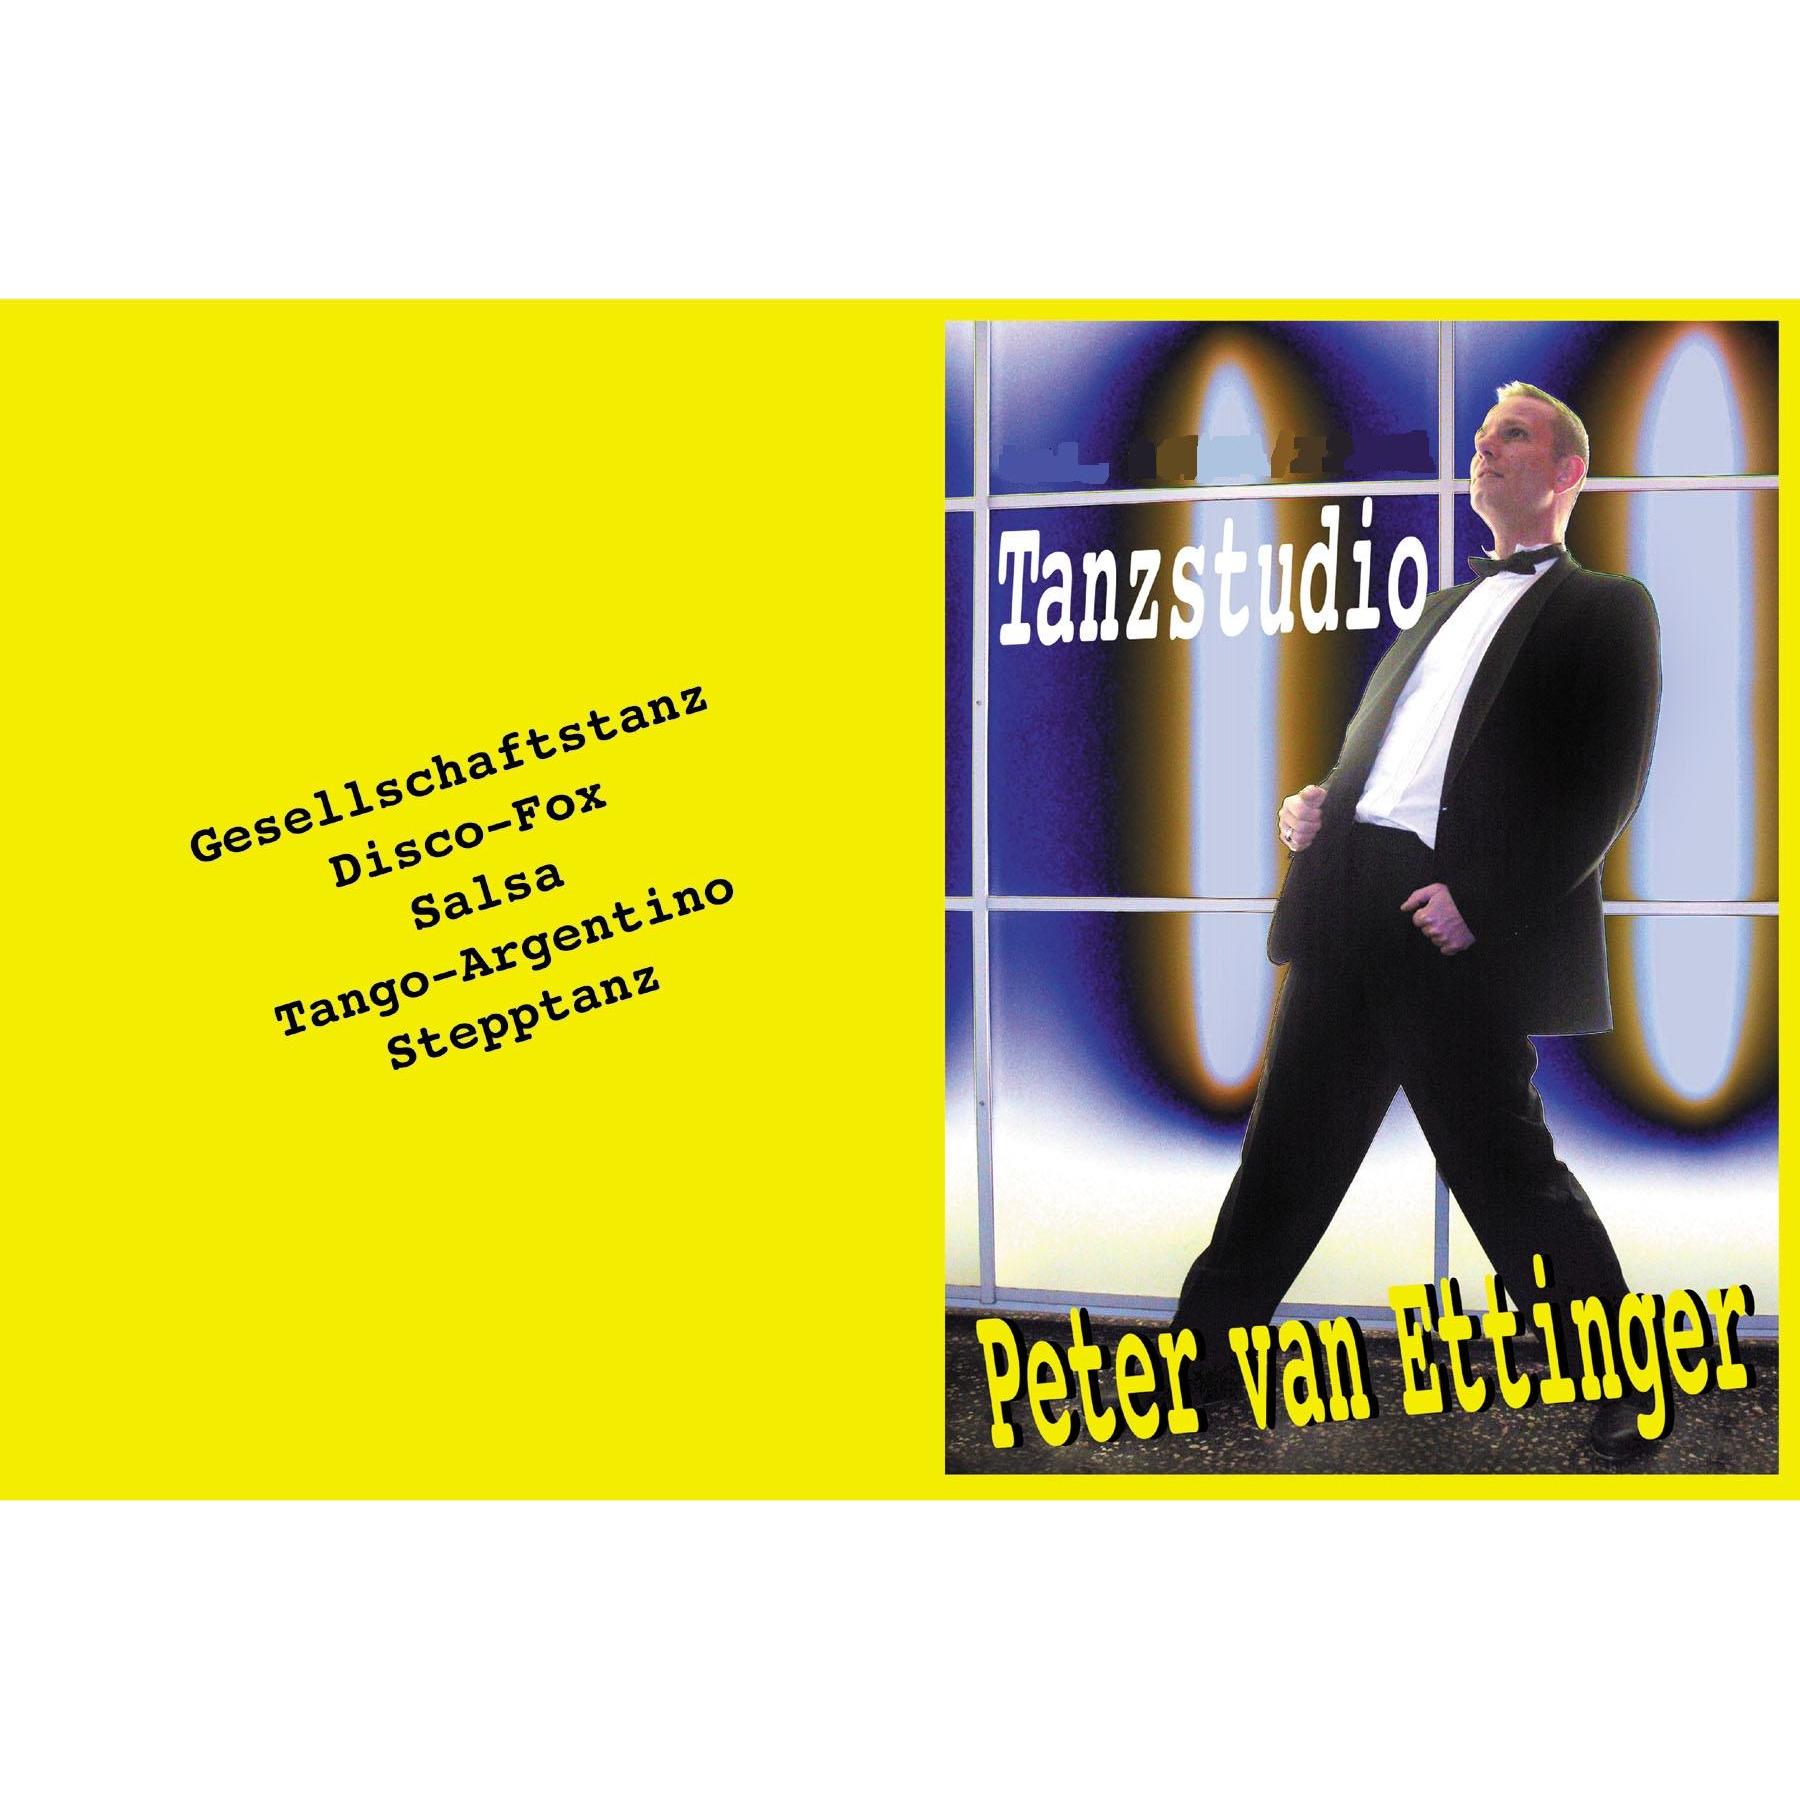 Tanzstudio Peter van Ettinger Logo